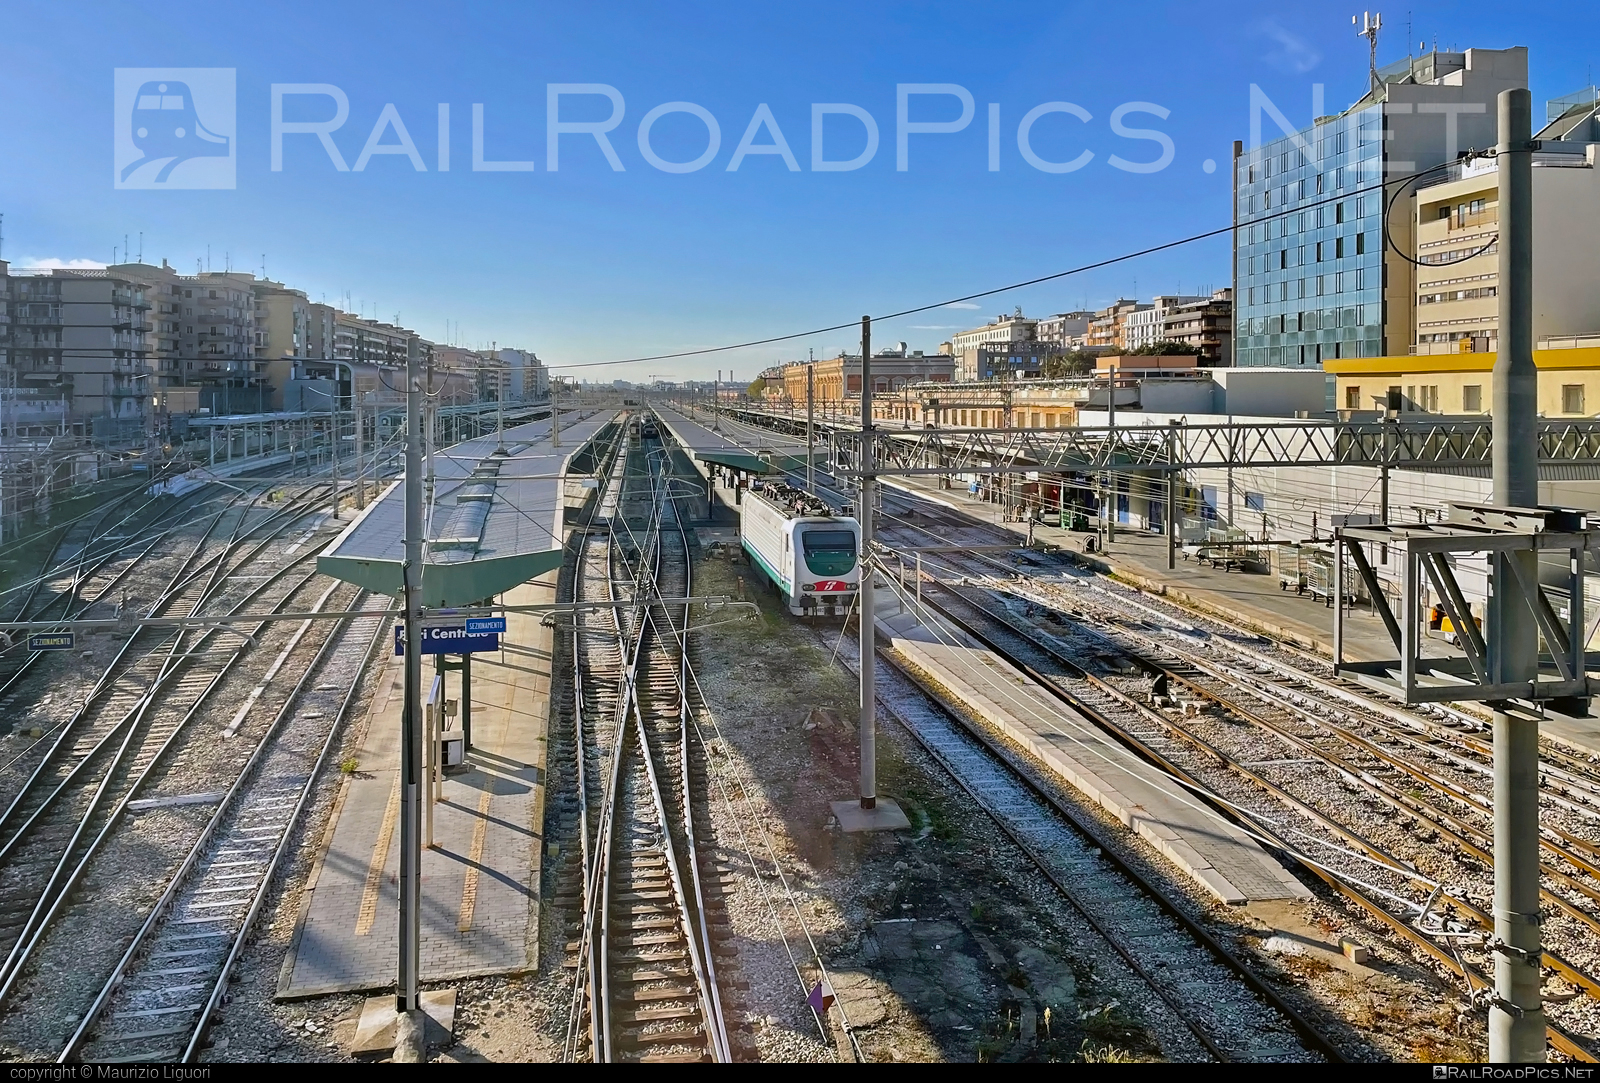 Bari Centrale location overview #bariCentrale #bariCentraleRailwayStation #bariCentraleStation #e402 #ferroviedellostato #fs #fsitaliane #trenitalia